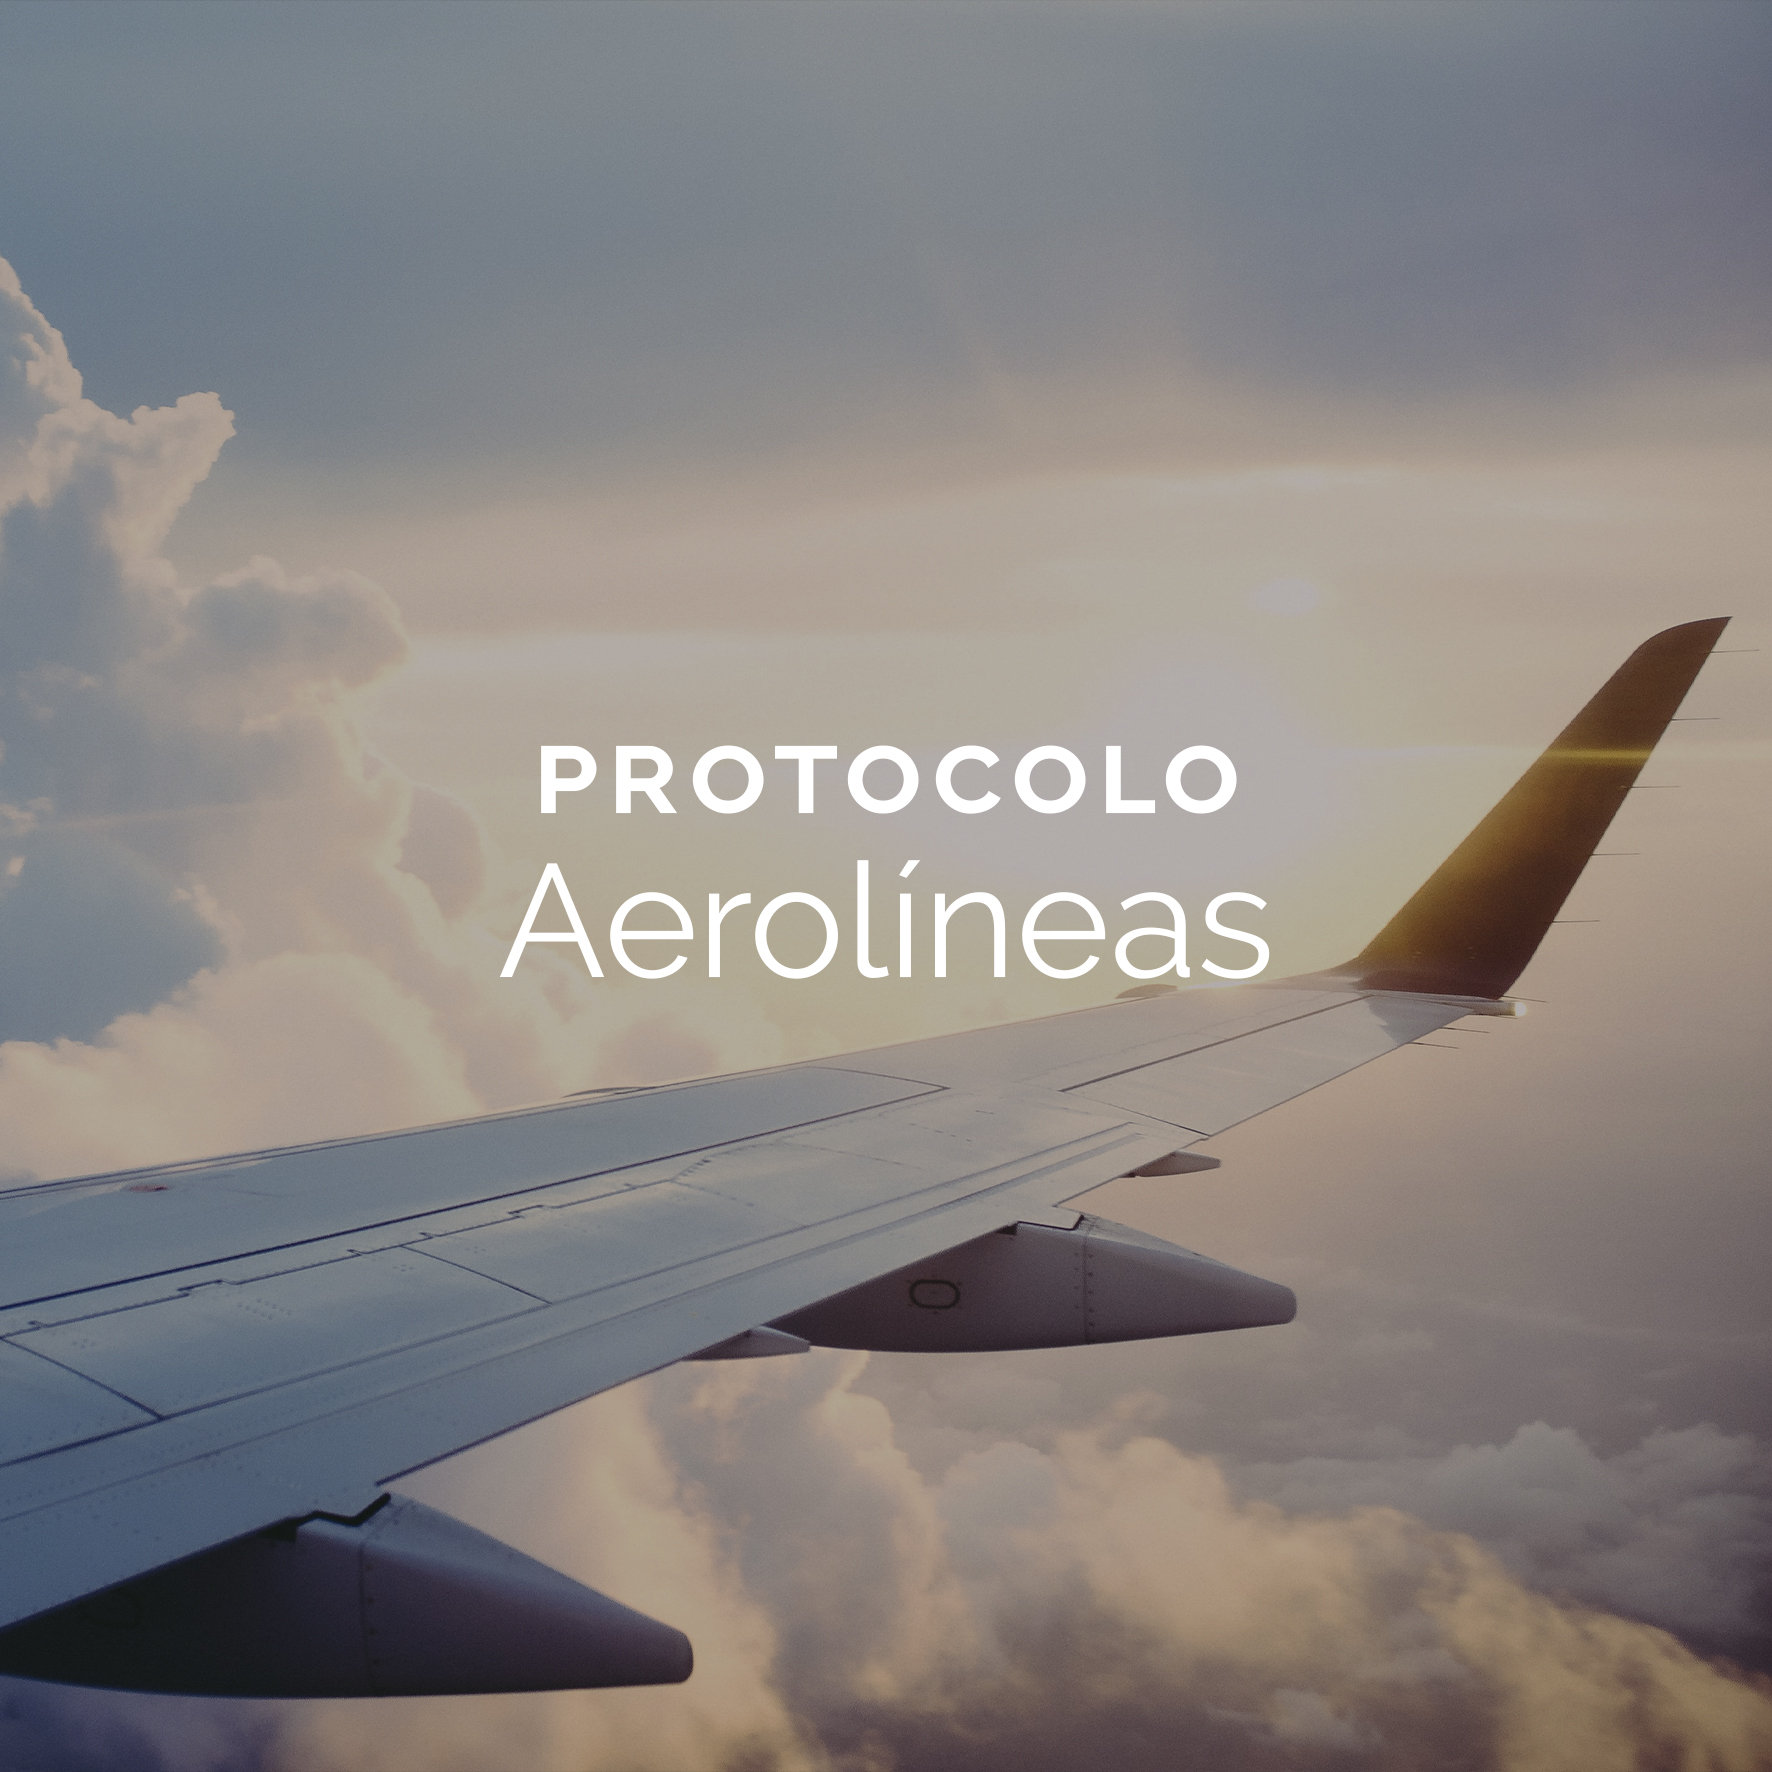 Protocolo Aerolíneas